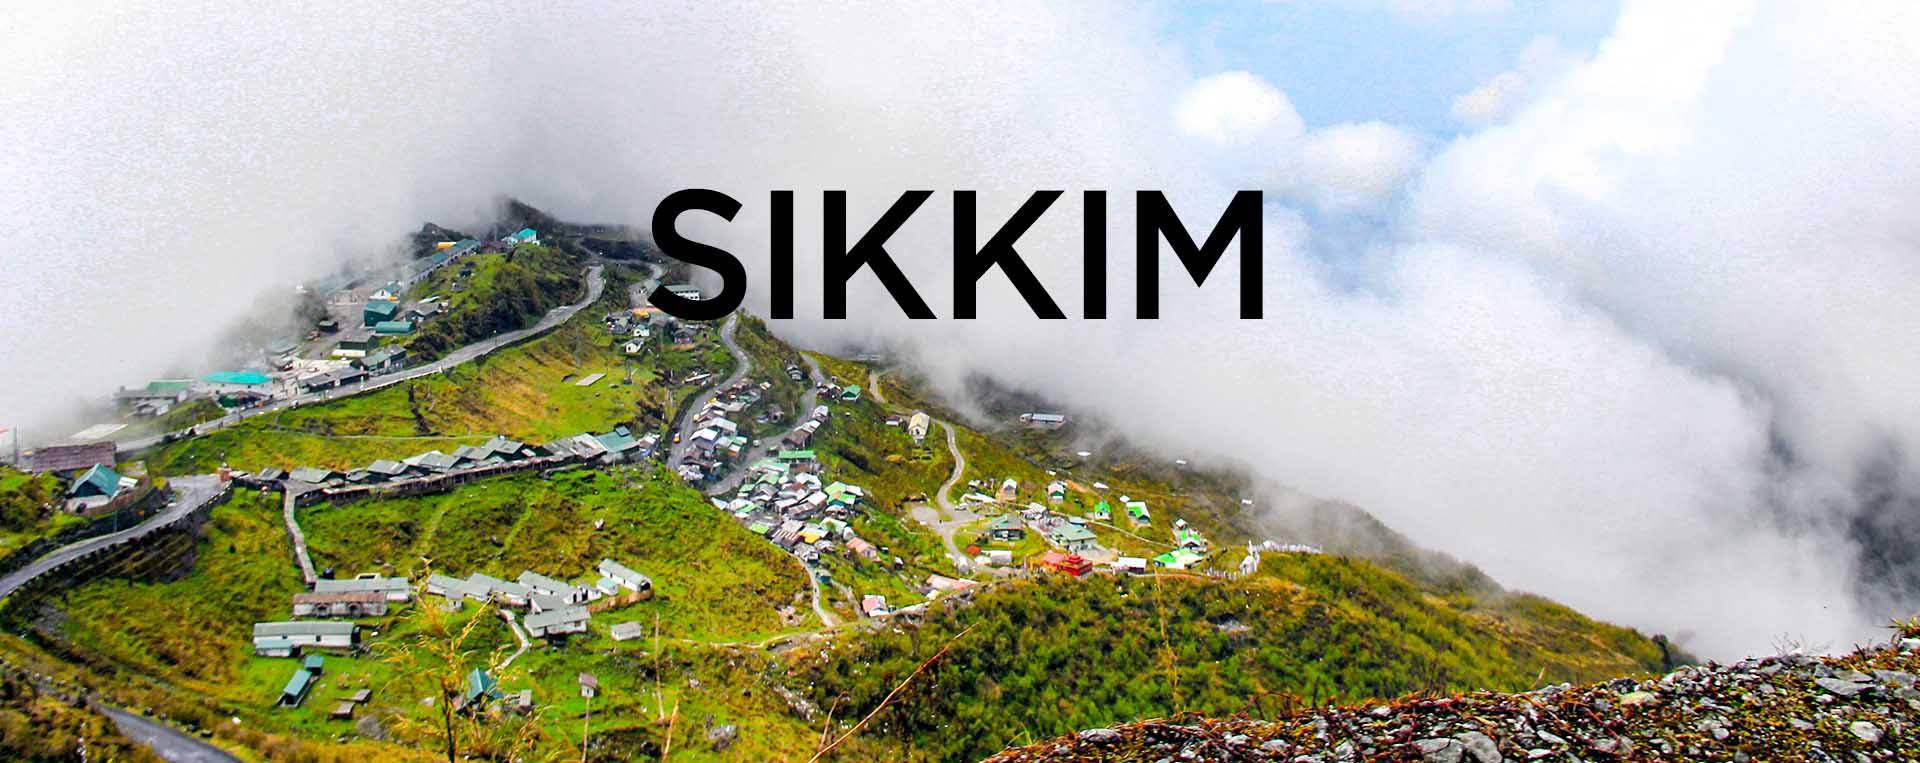 wanderon-sikkim-trip